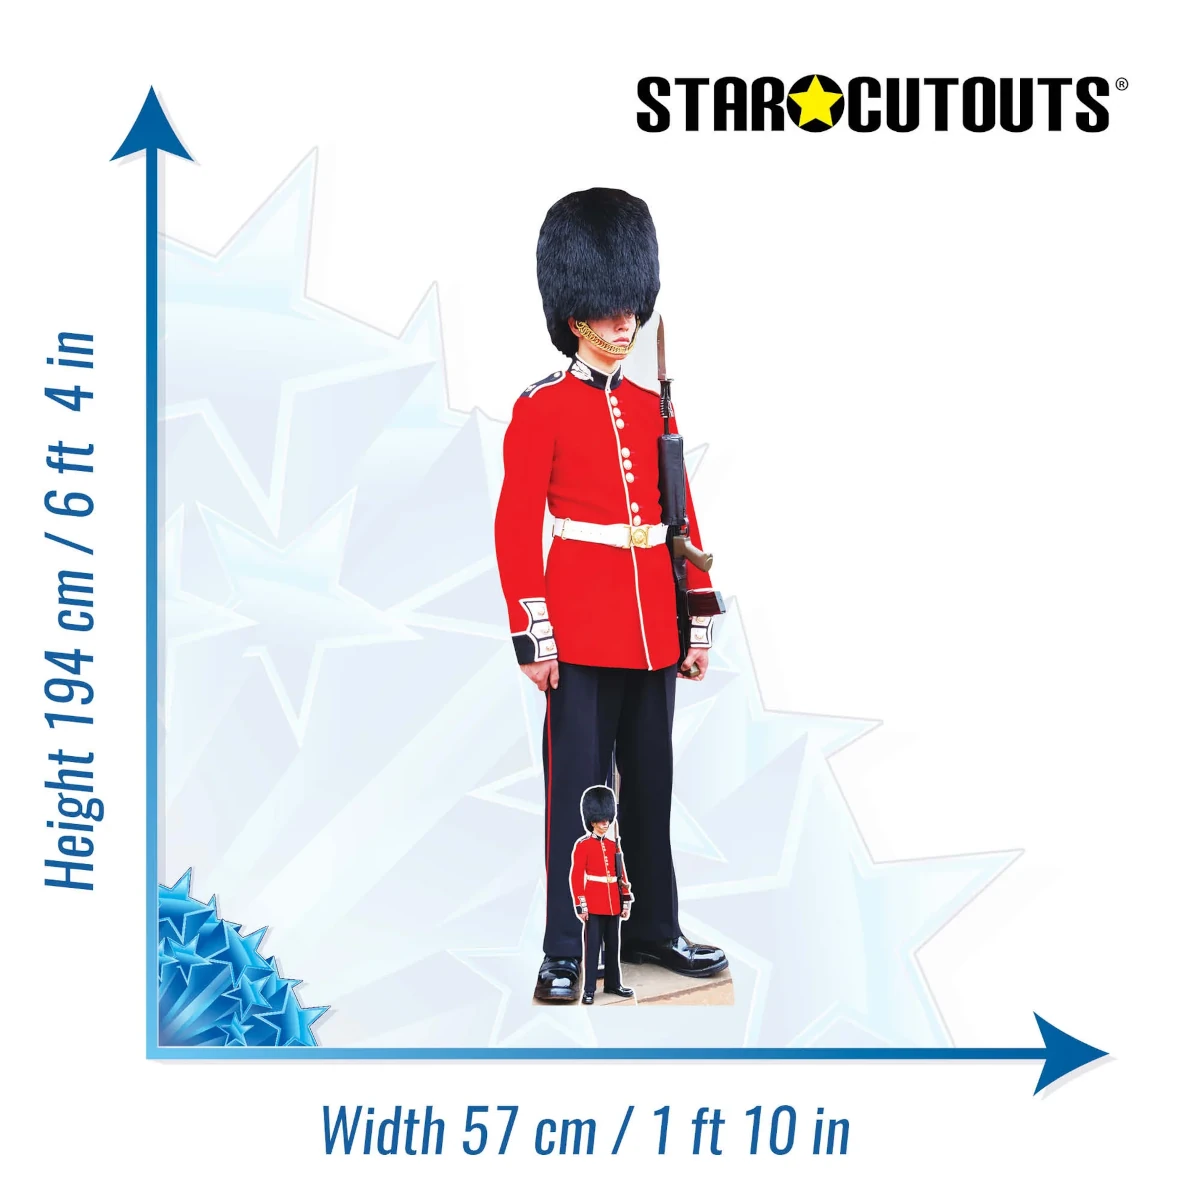 SC4063 Buckingham Palace Guard Lifesize + Mini Cardboard Cutout Standee Size